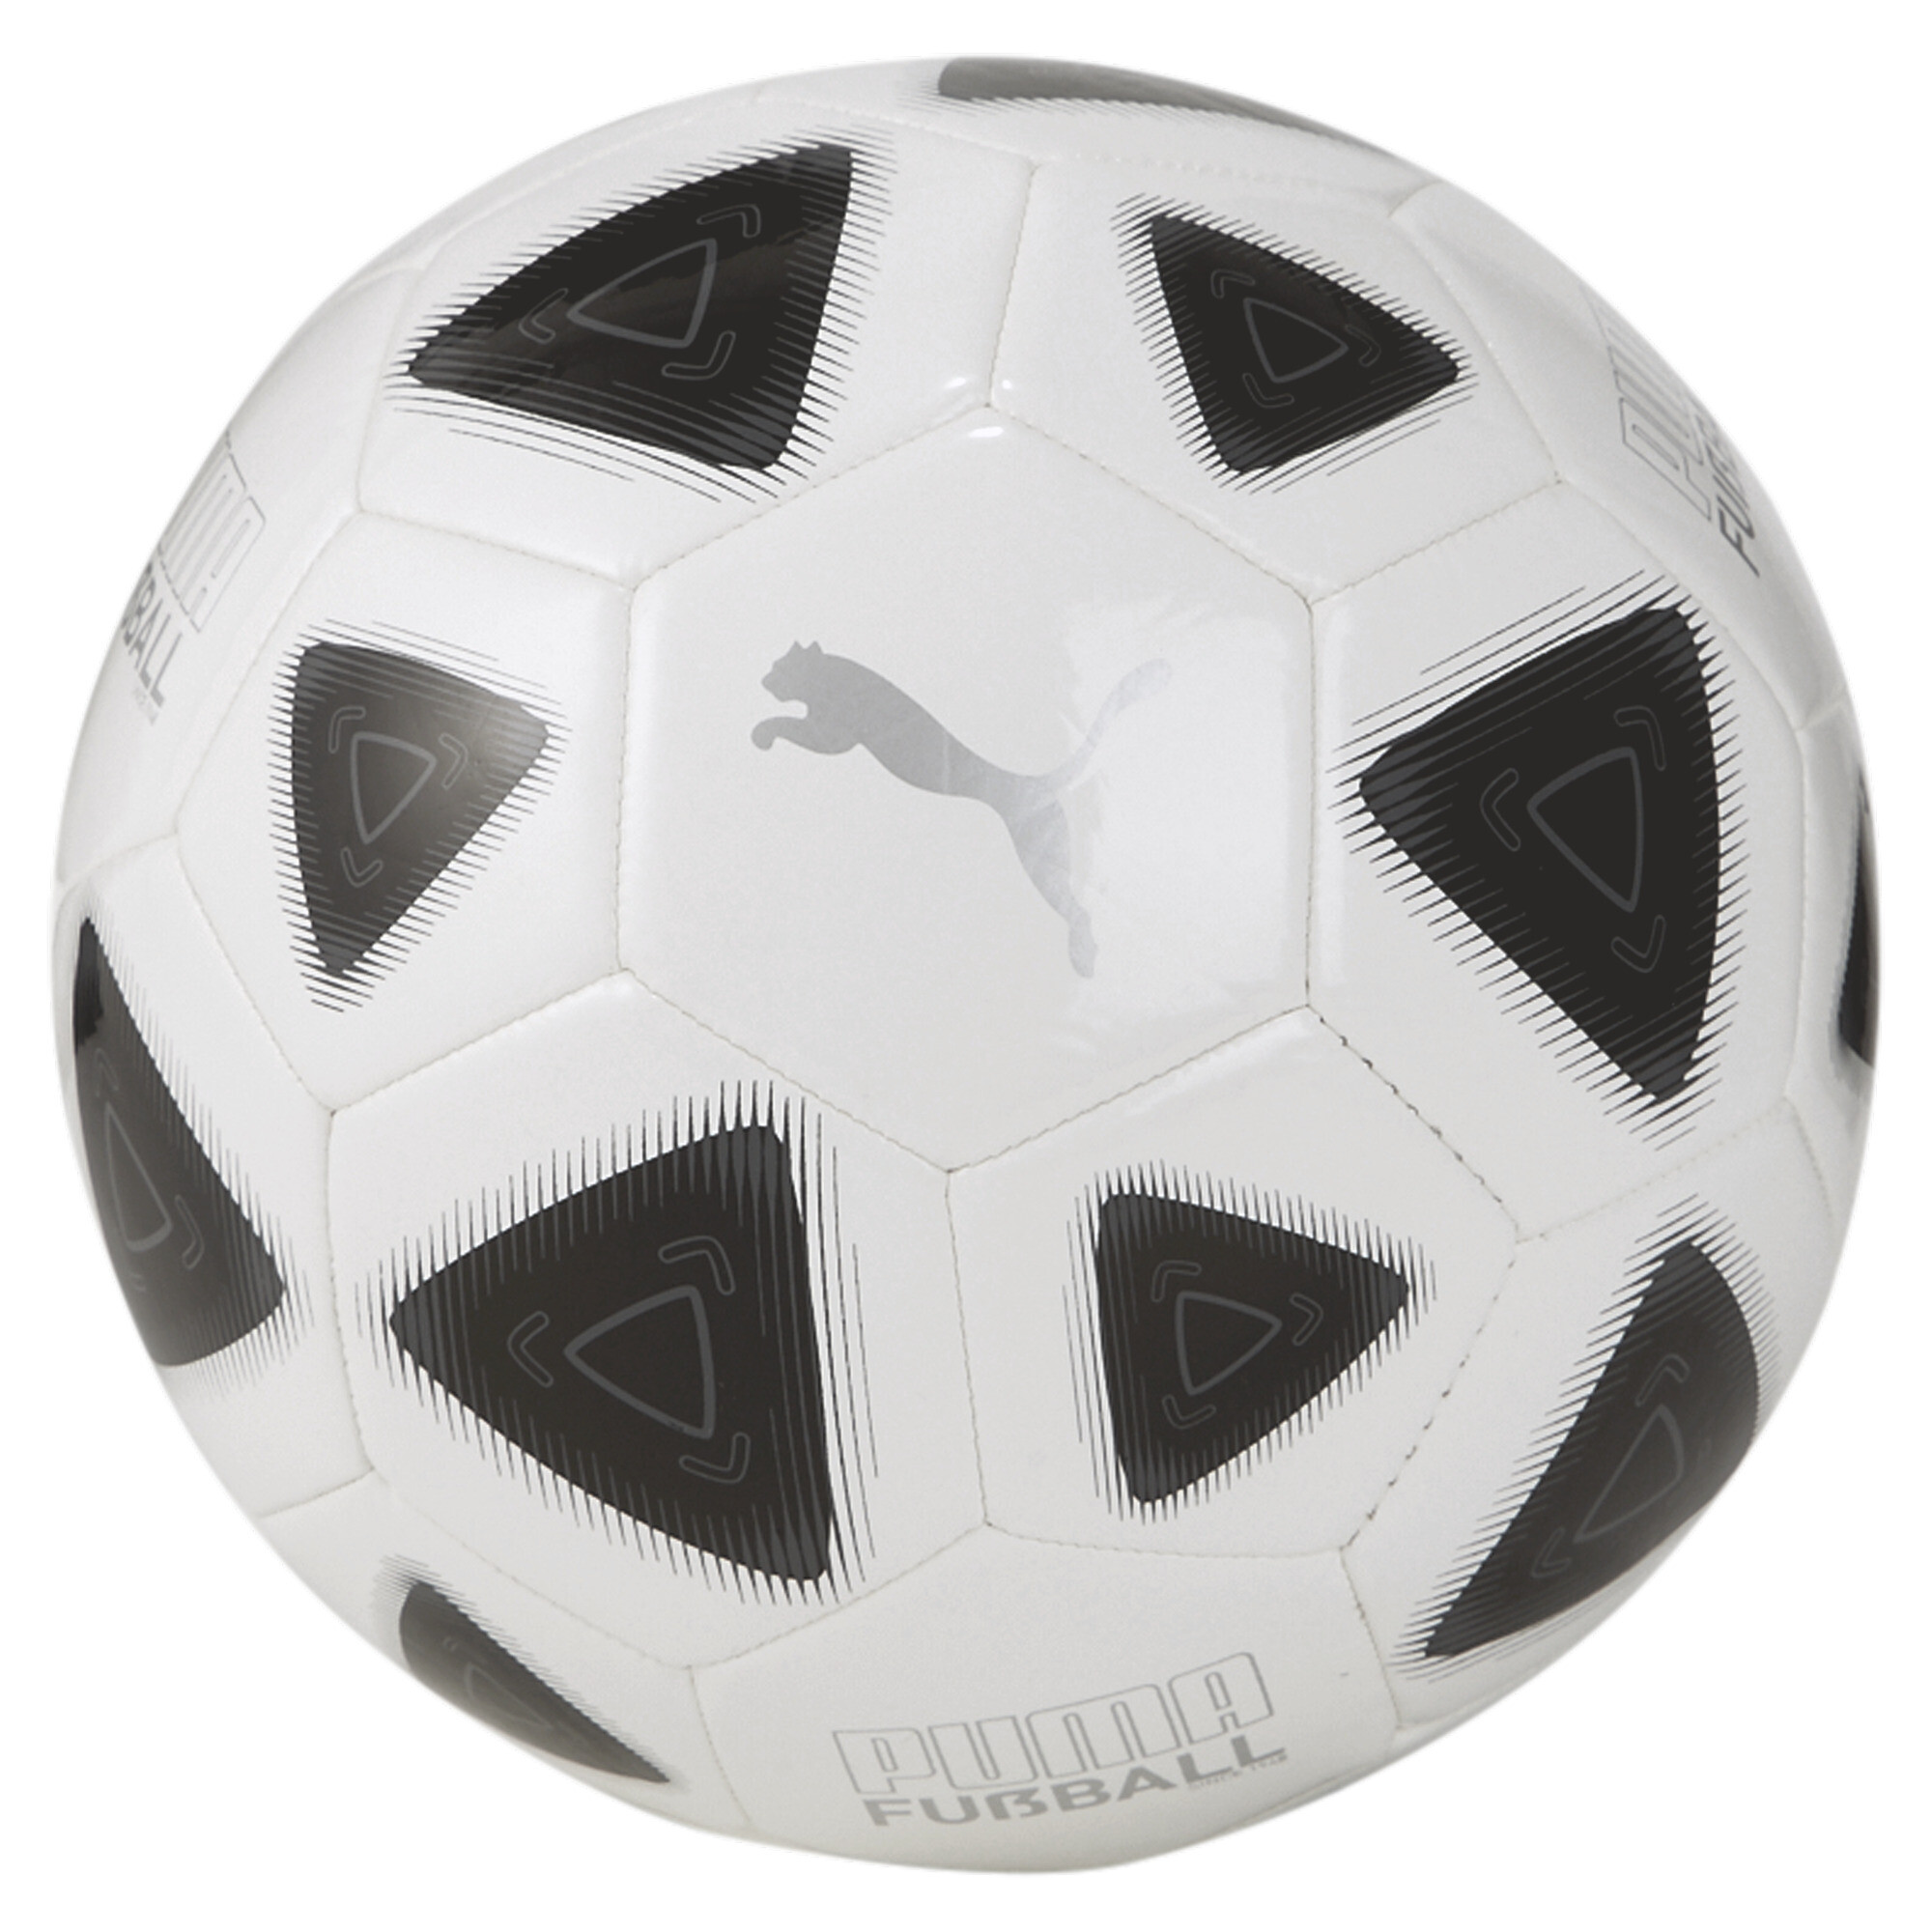 Men's Puma FUÃBALL Prestige Football, White, Size 4, Accessories